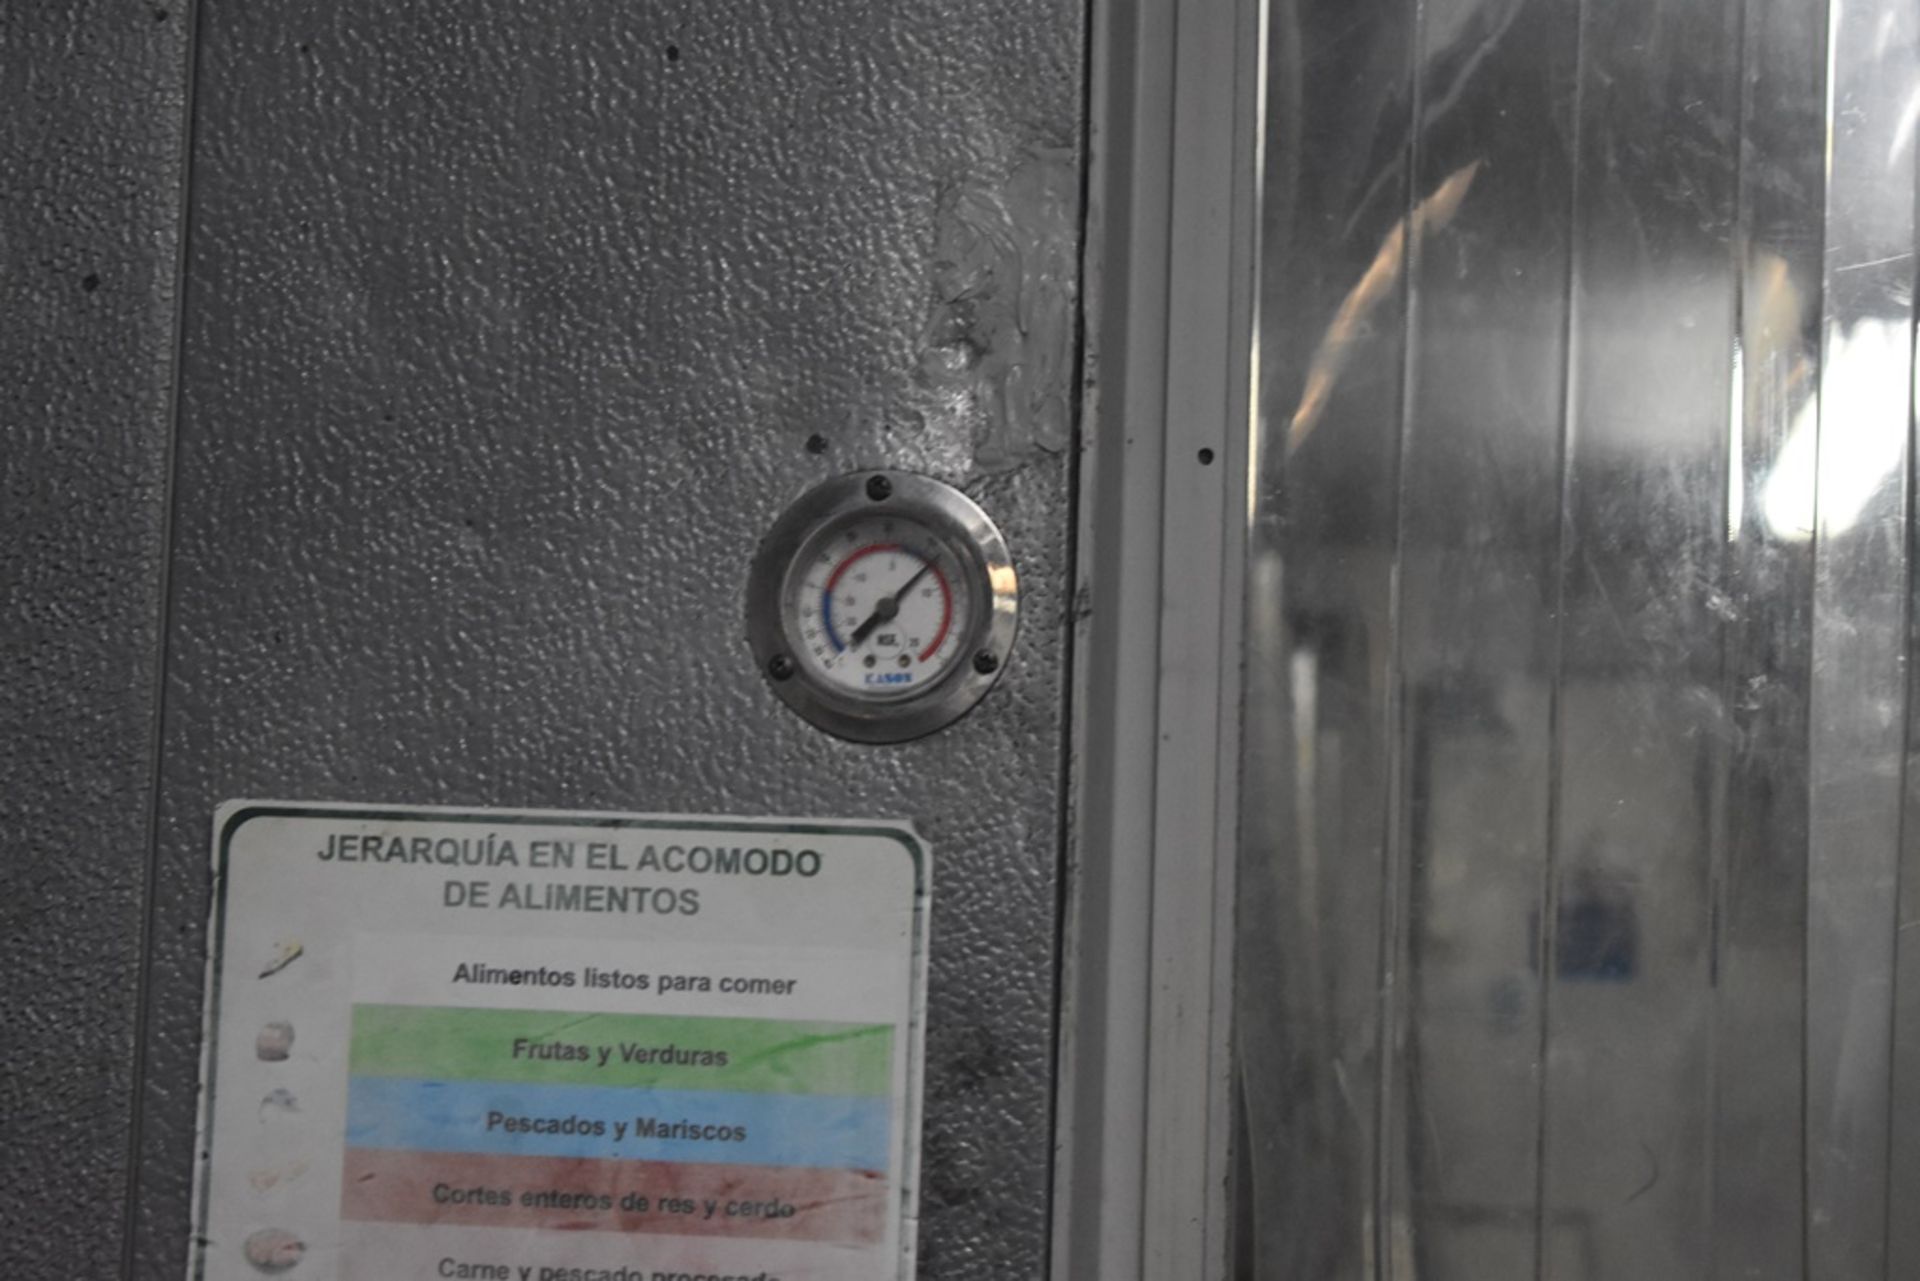 Cámara de congelación medidas 2.50 x 2.54 x 2.20 m, incluye difusor de dos ventiladores marca Bohn, - Image 7 of 31